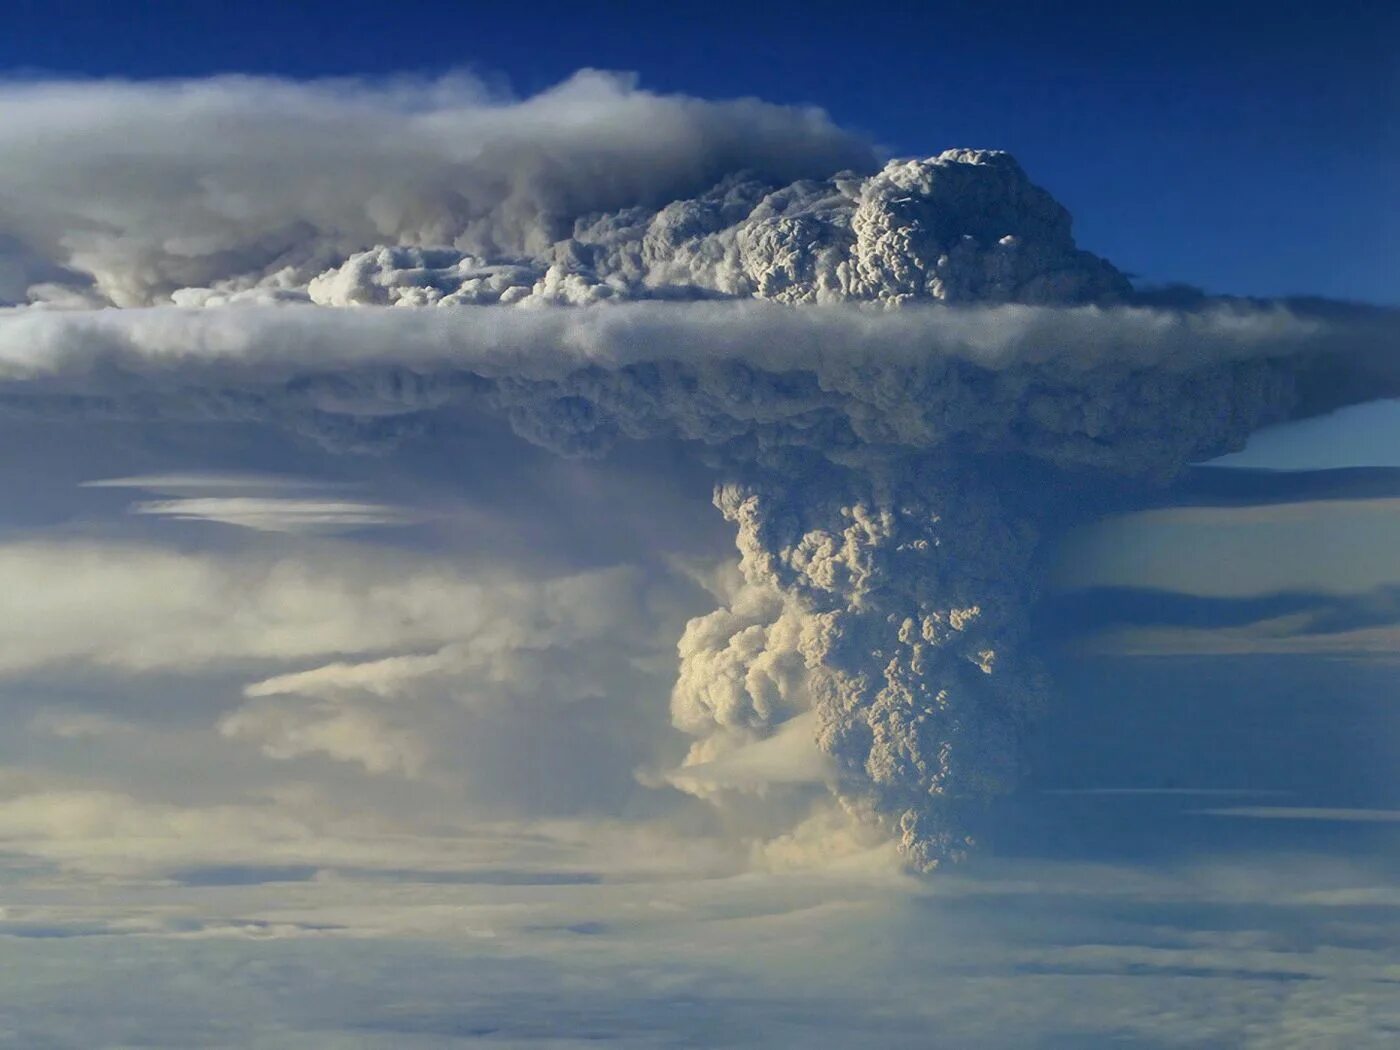 Извержение вулкана в Чили Пуйеуэ. Вулкан Пуйеуэ Чили. Извержение вулкана Пуйеуэ 2011. Извержение вулкана Пуйеуэ в Чили 2011.